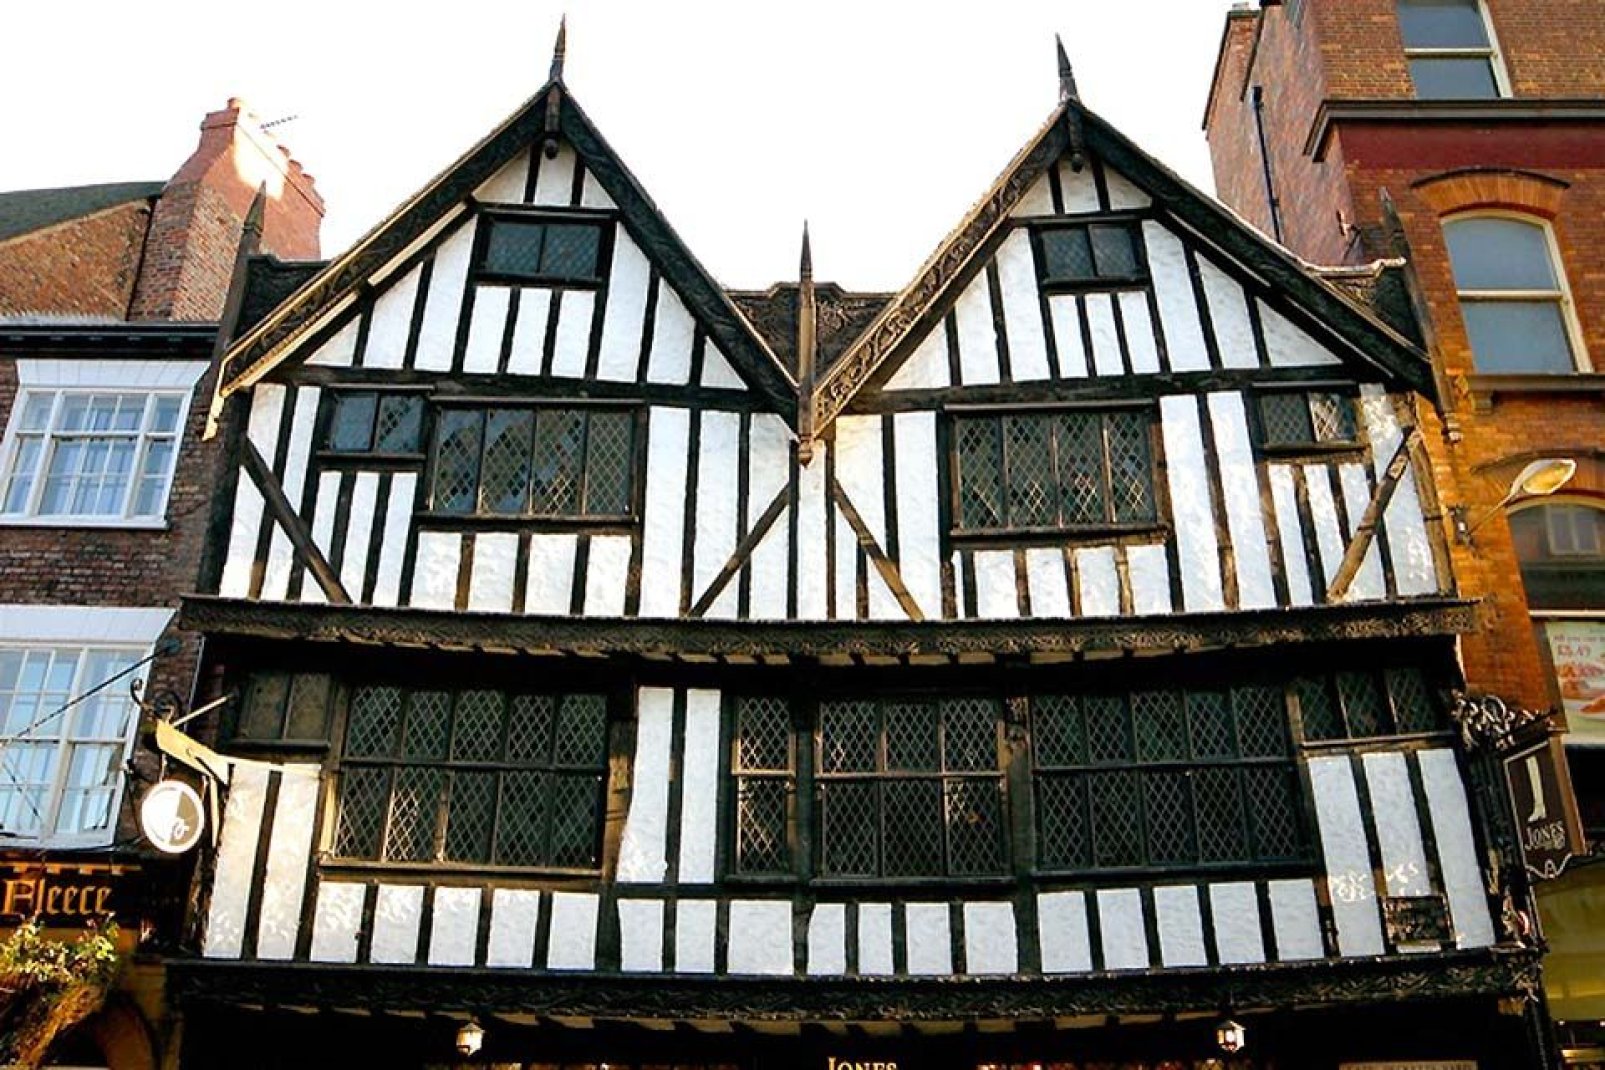 Una de las numerosas casas de la época de los Tudor de la ciudad, muy bien conservadas durante siglos.